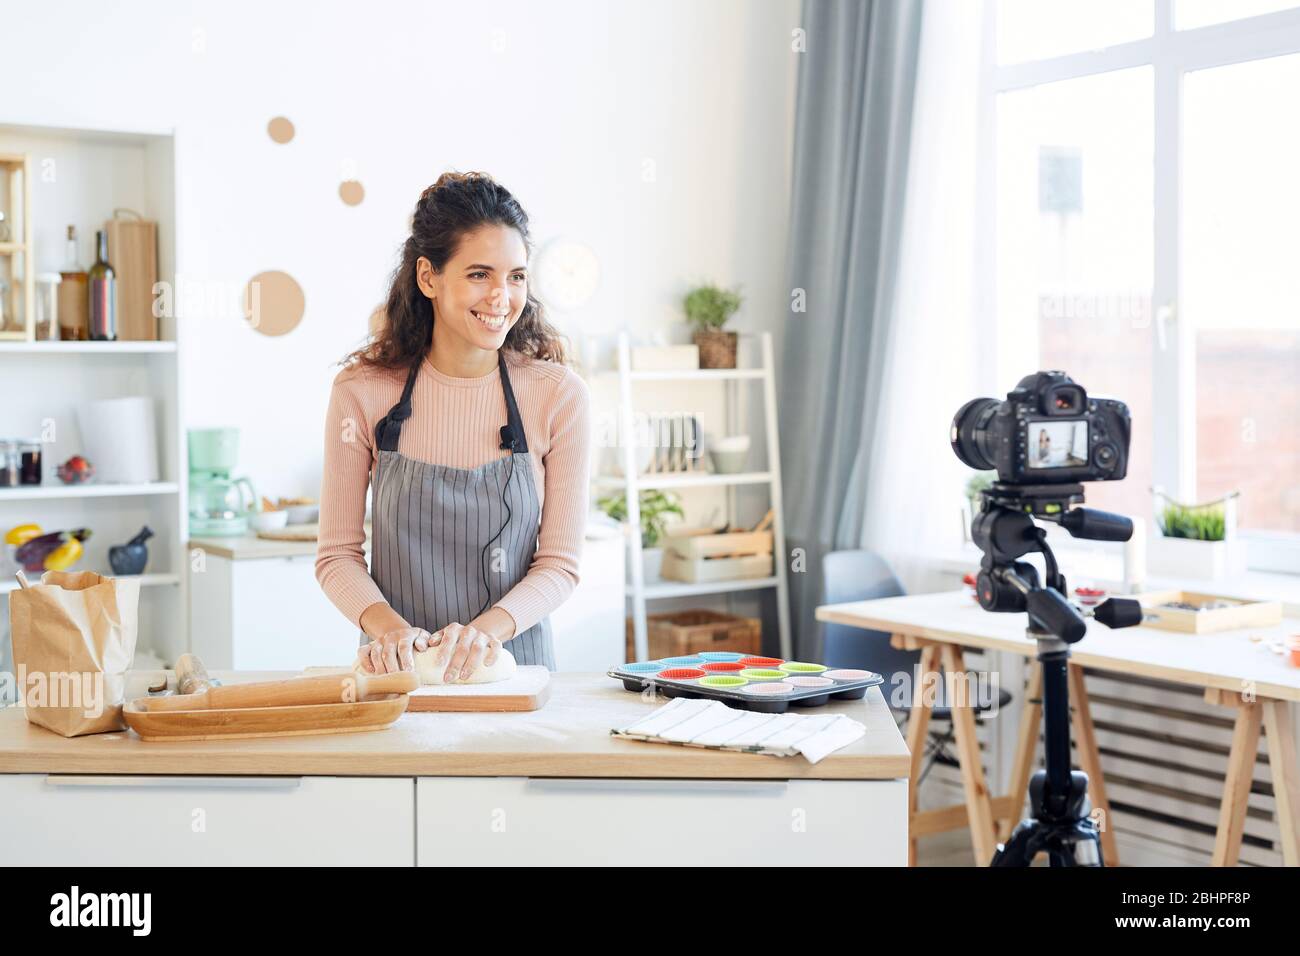 Lächelnde junge Frau Kneten Teig für Cupcakes während der Aufnahme Video für ihre Lebensmittel-Blog Stockfoto